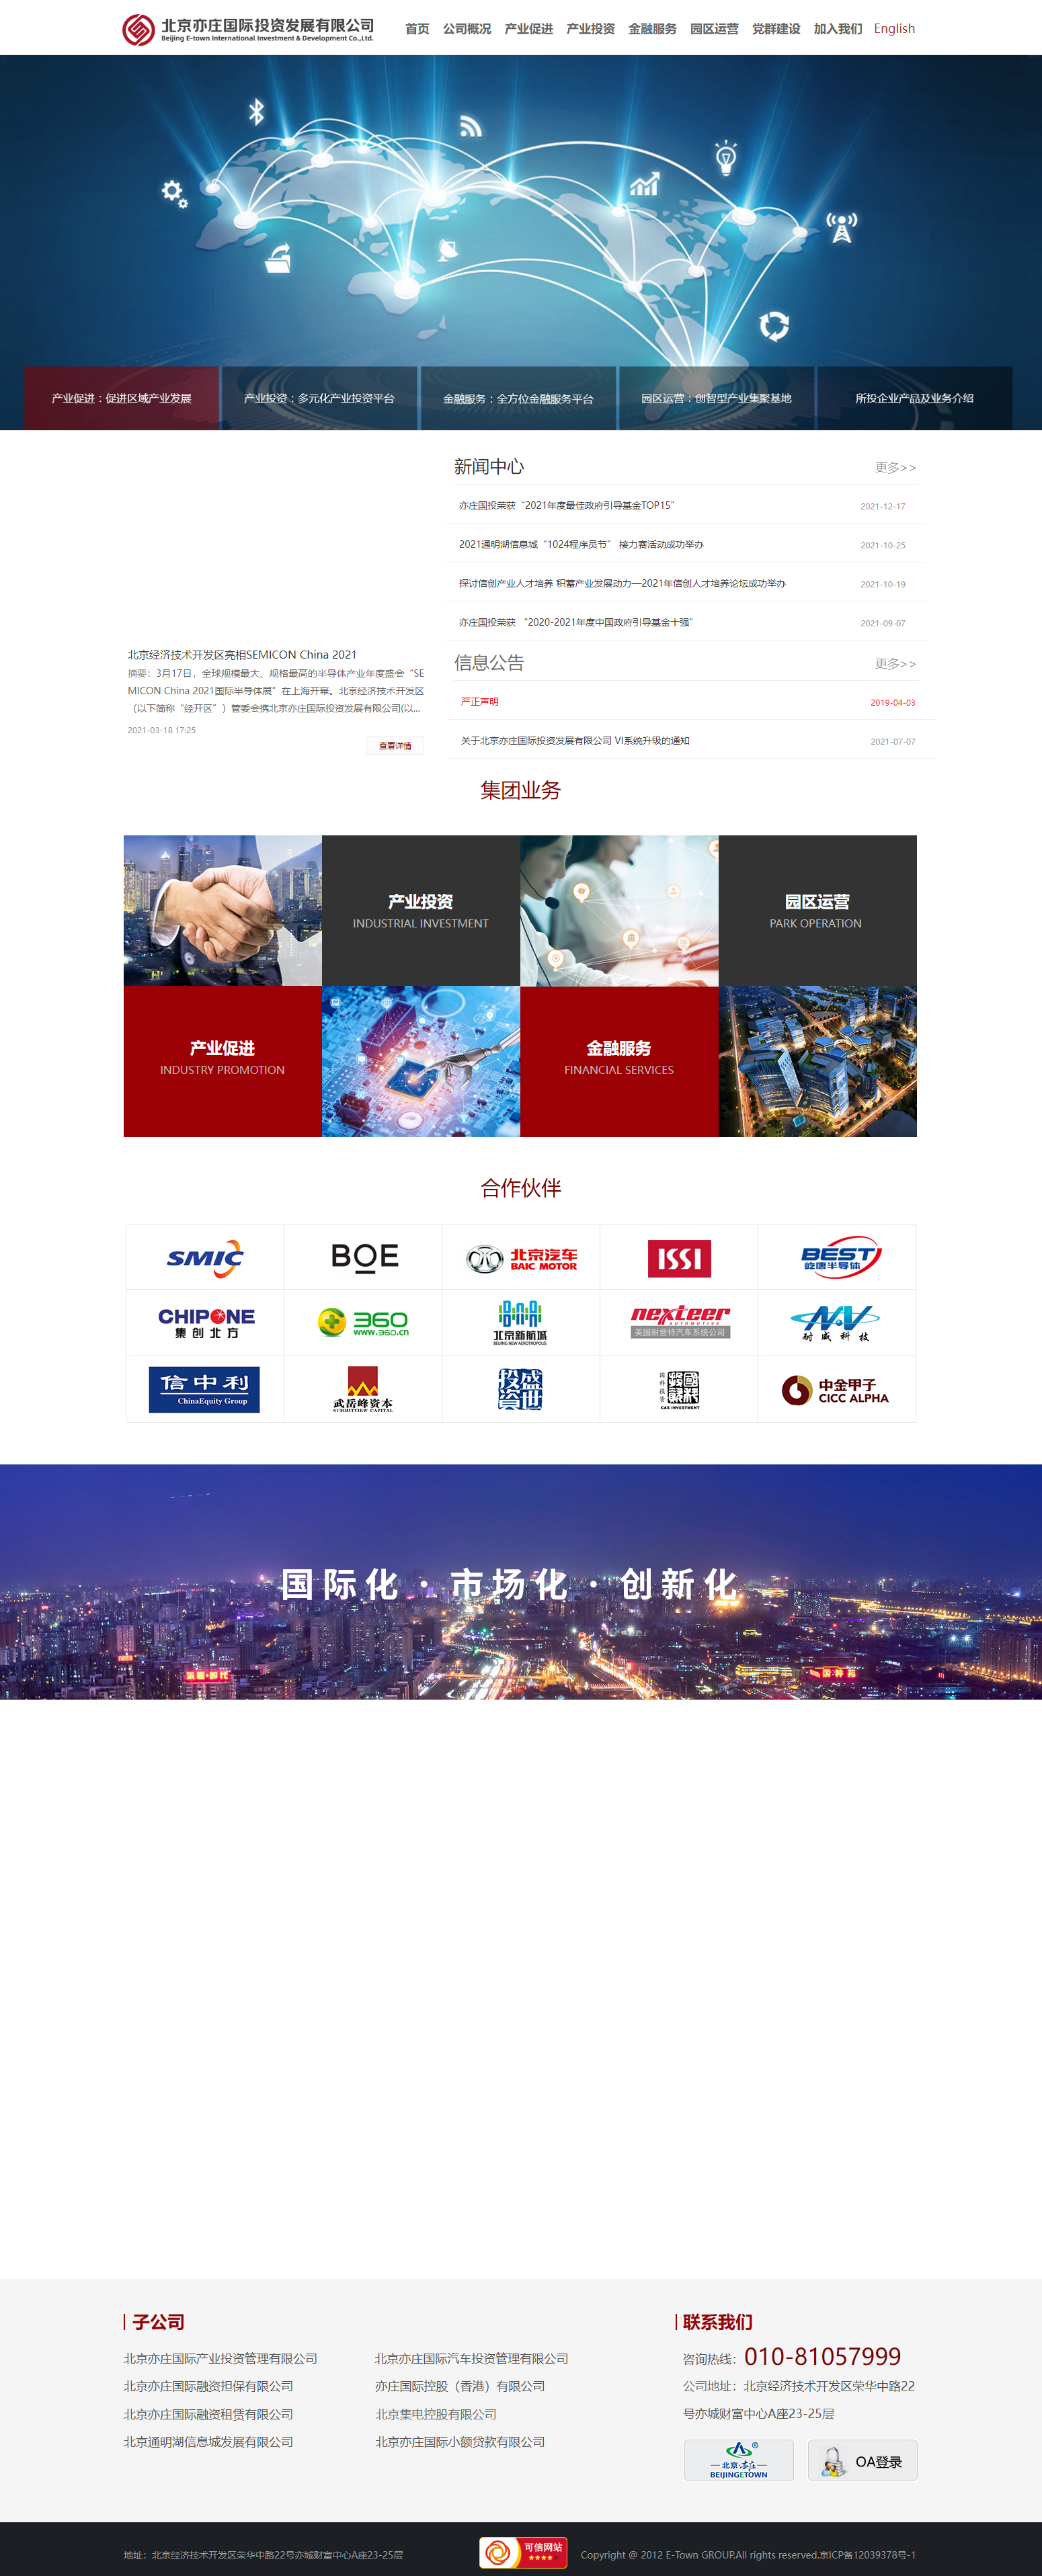 北京亦庄国际投资发展有限公司网站案例